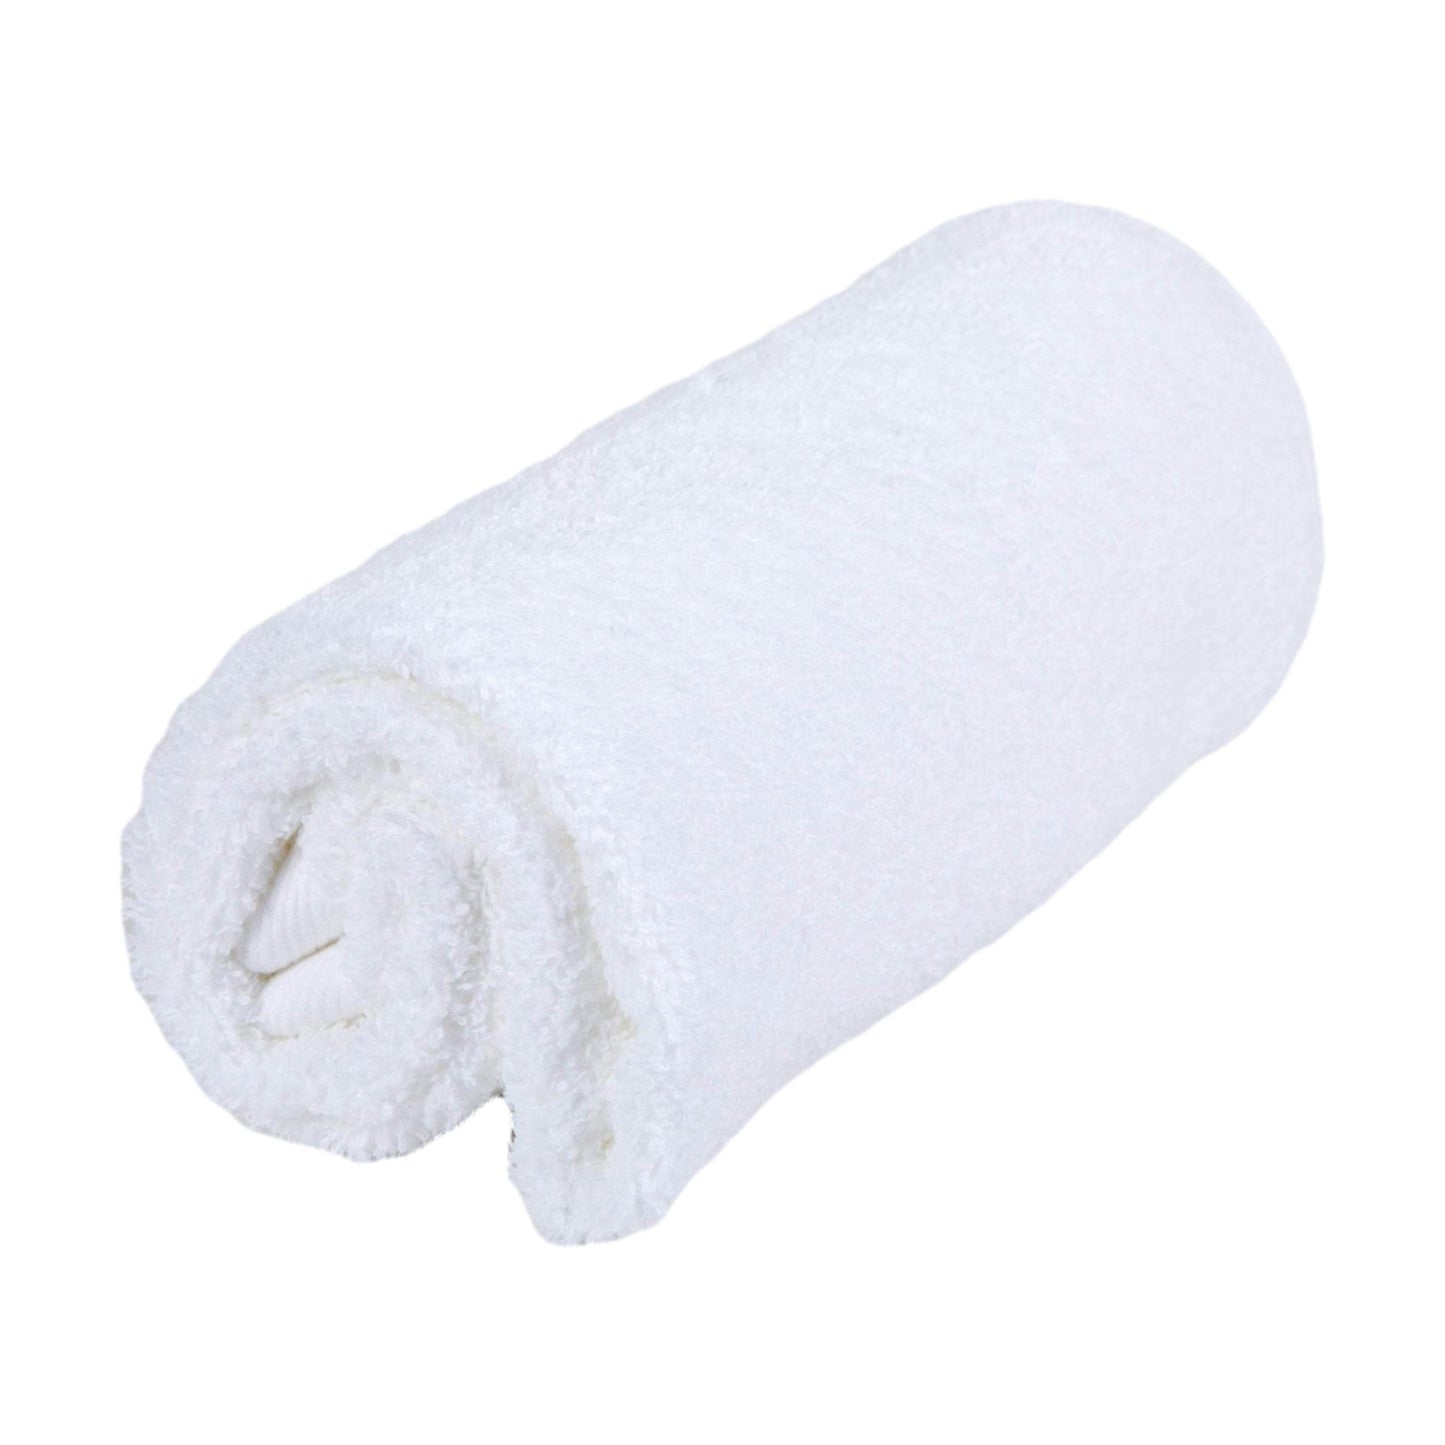 Sposh Luxury Terry Bath Towel, 55" x 30", 600 GSM